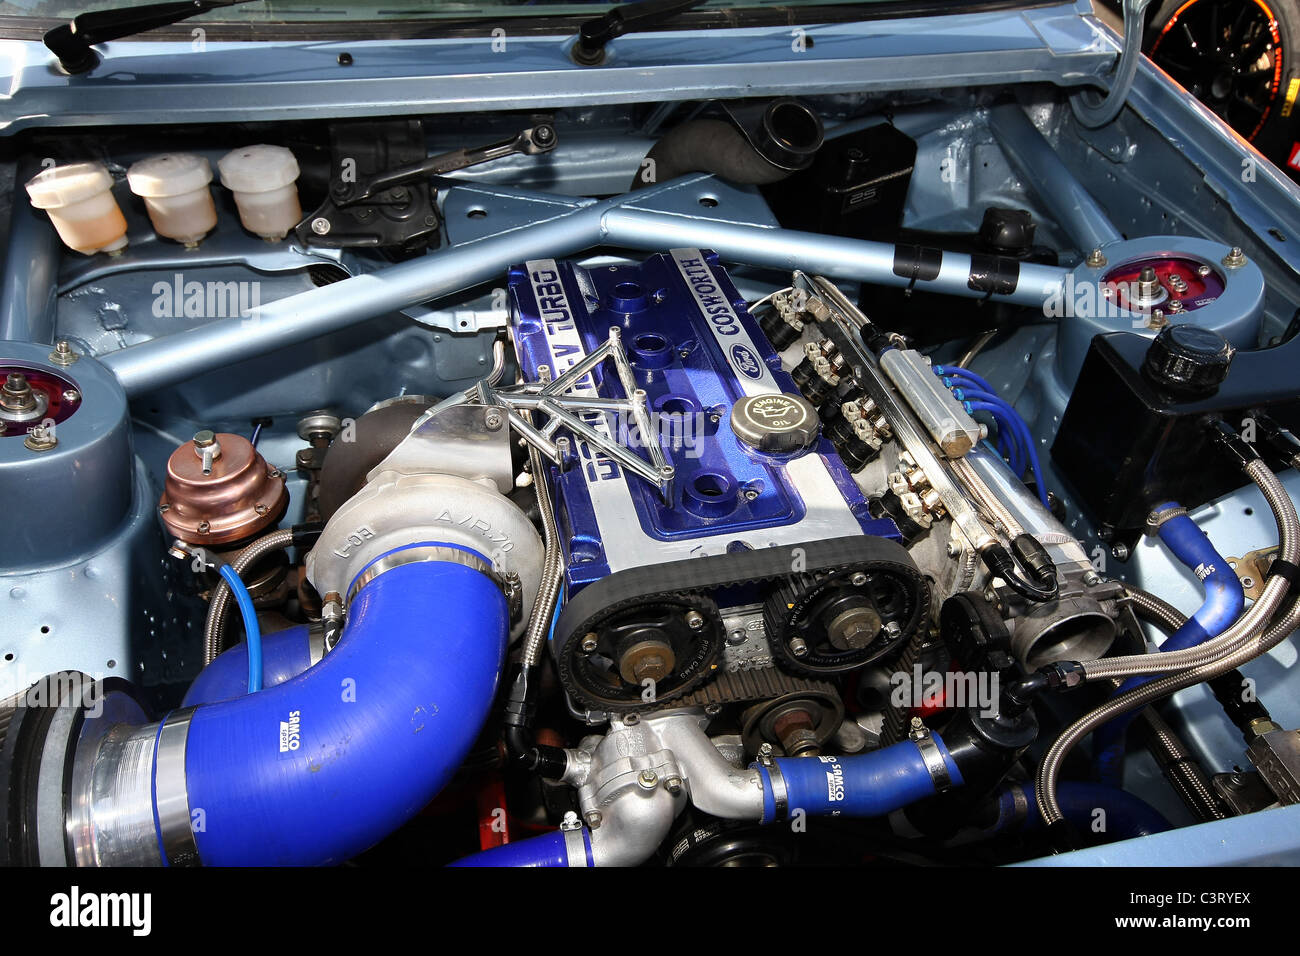 Alte prestazioni Ford motore Cosworth. Foto Stock